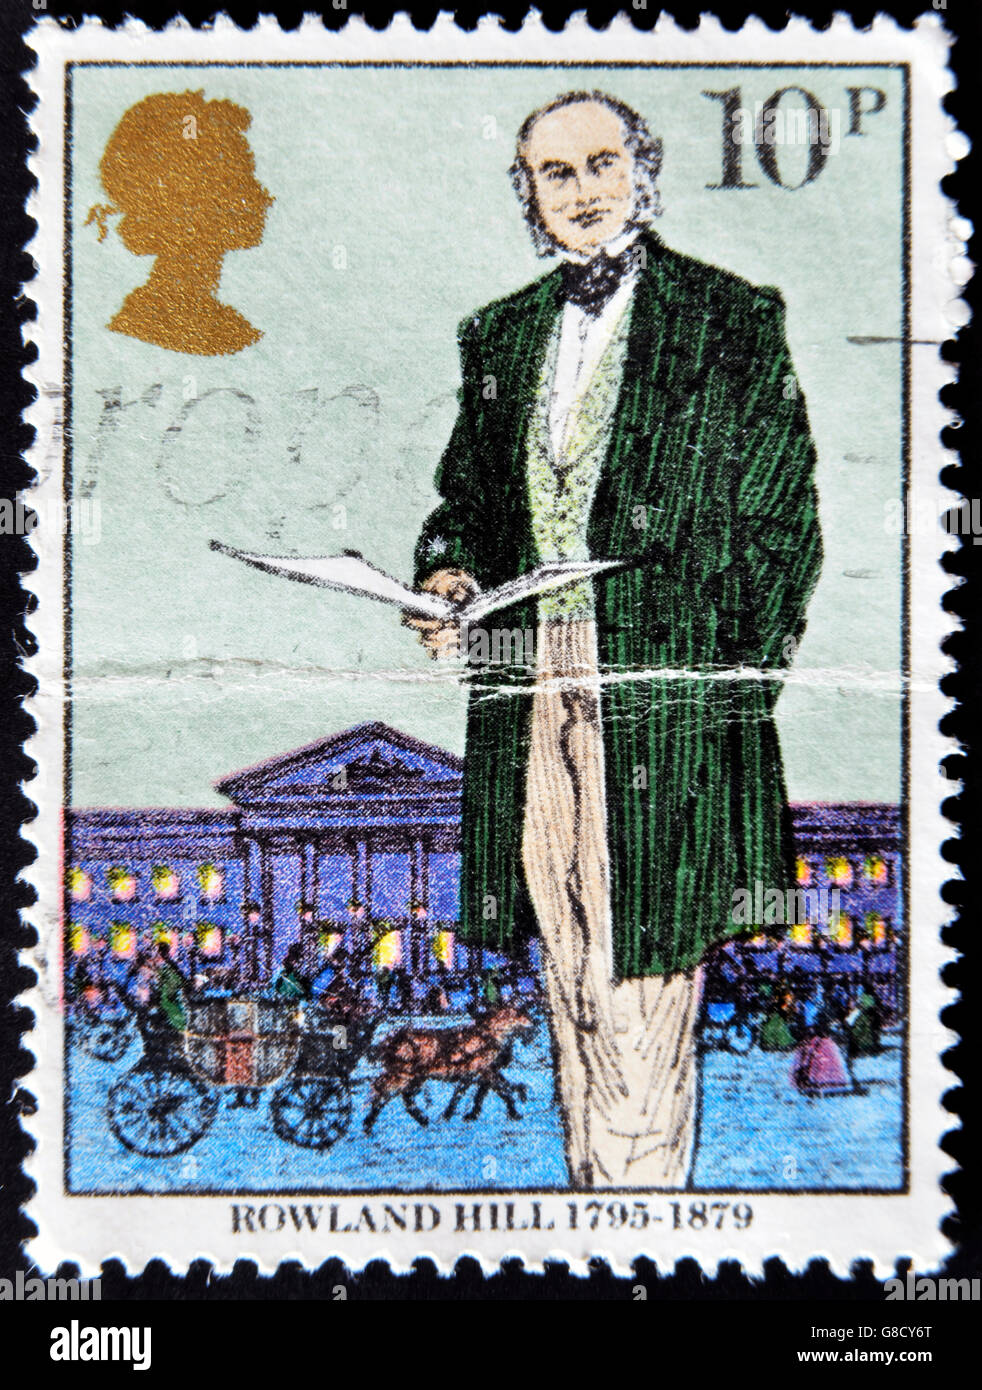 Reino Unido - circa 1979: un sello impreso en Gran Bretaña muestra Sir Rowland Hill, el originador de Penny, reformador de franqueo Foto de stock